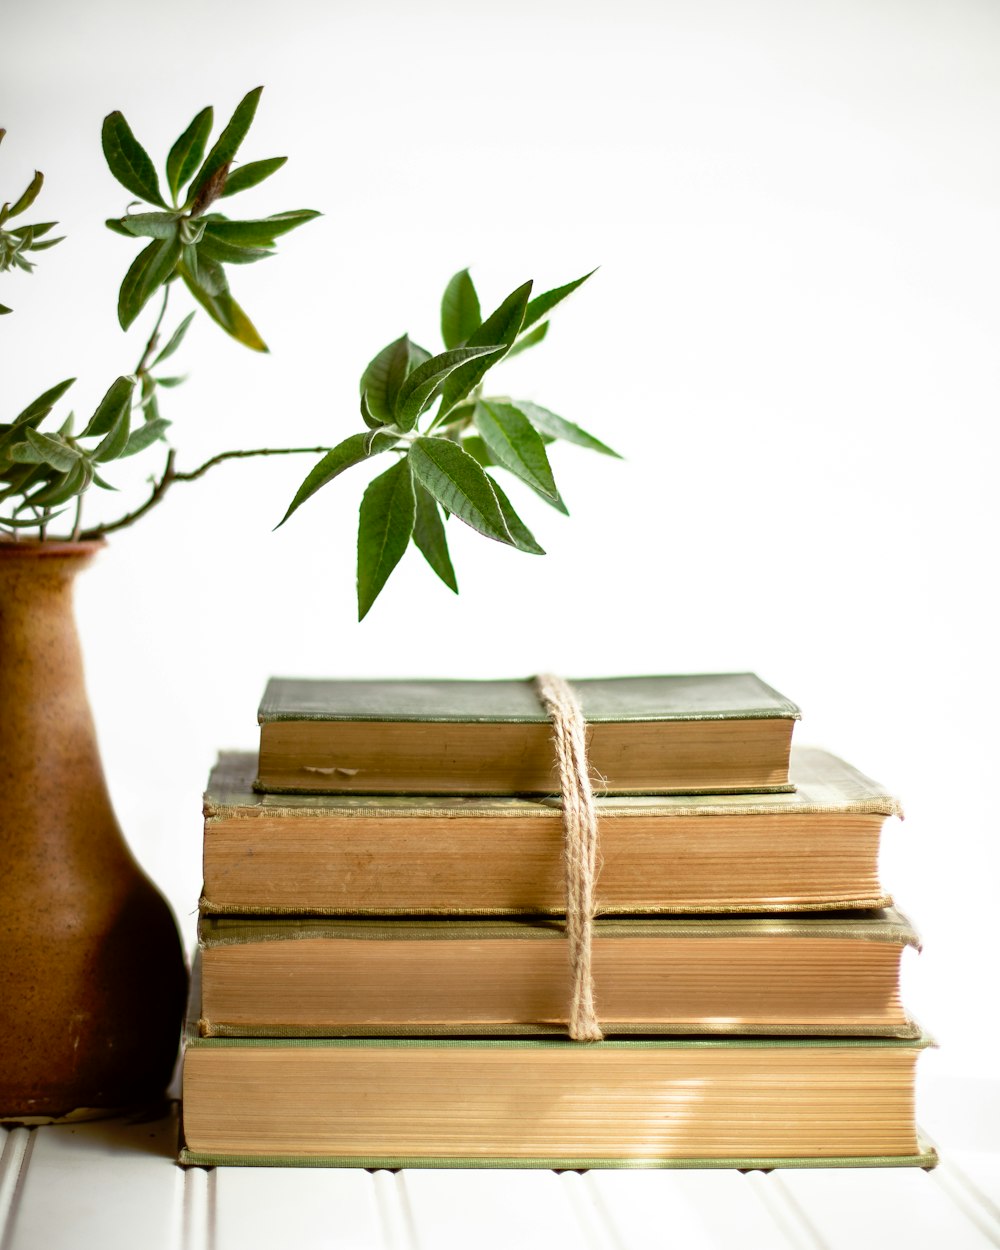 Una pila de libros junto a un jarrón con una planta